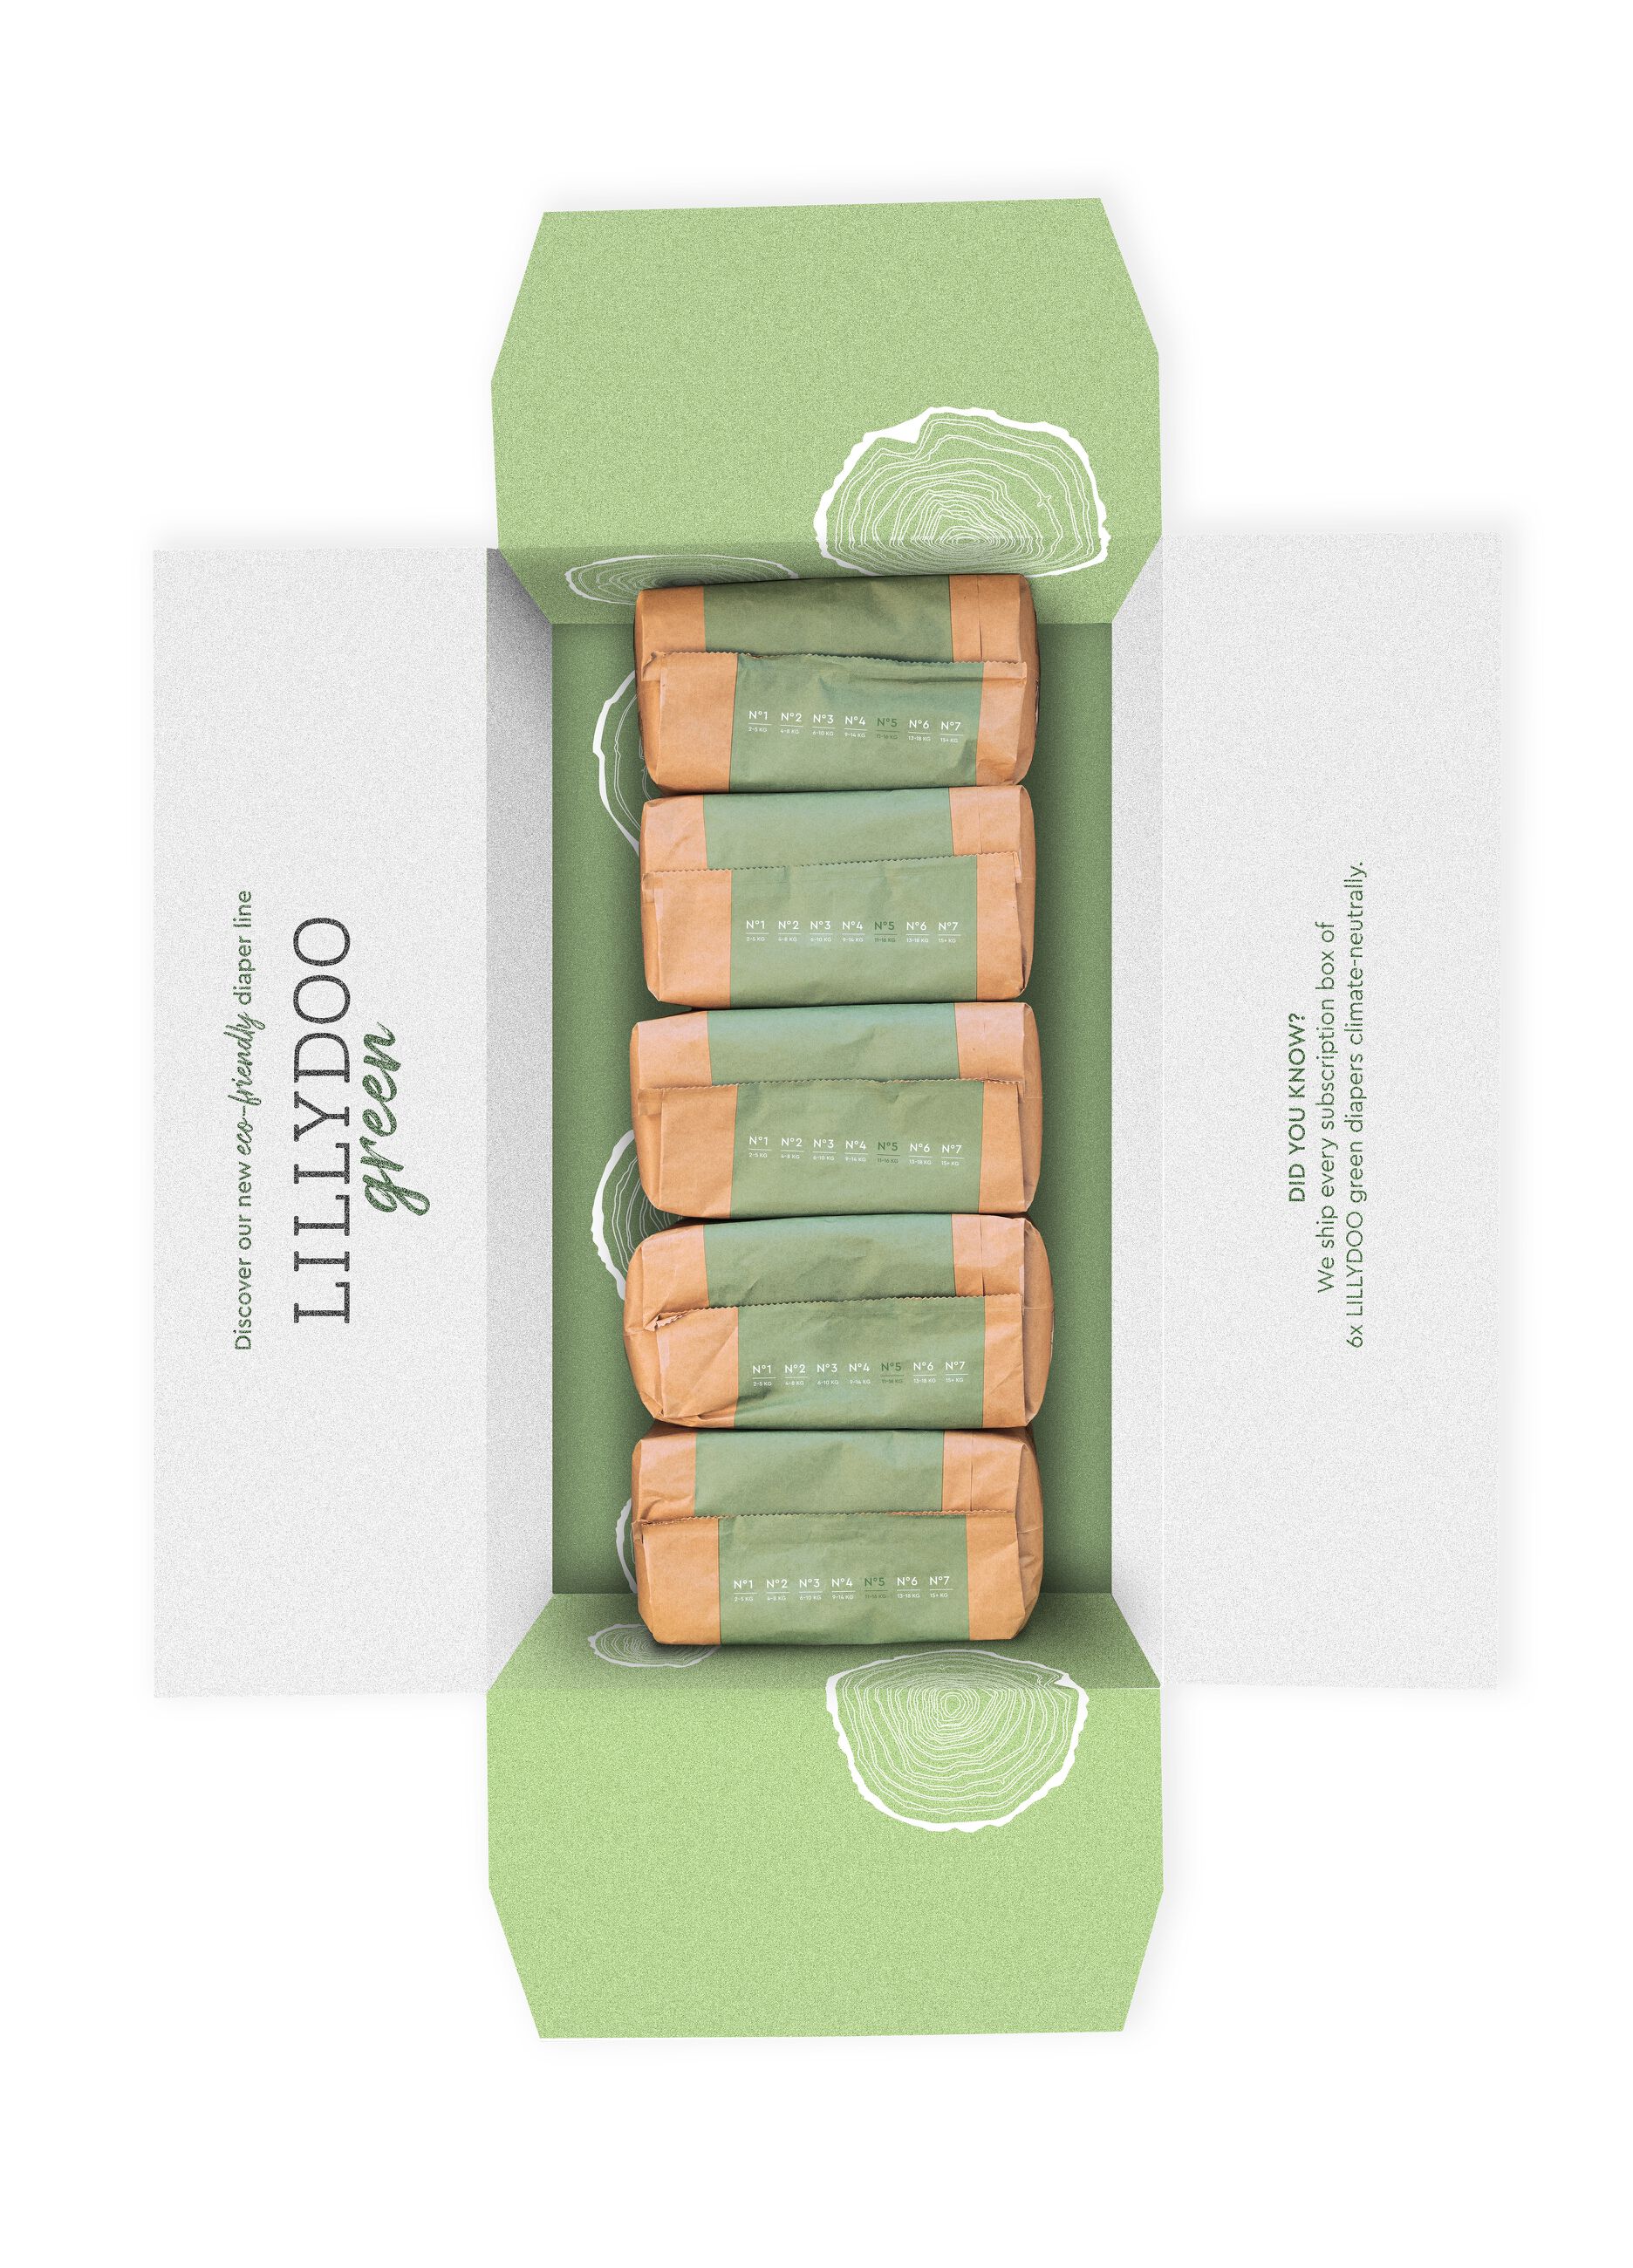 Pannolini multipack da 5 confezioni ecosostenibili N°5 (11-16Kg) Lillydoo